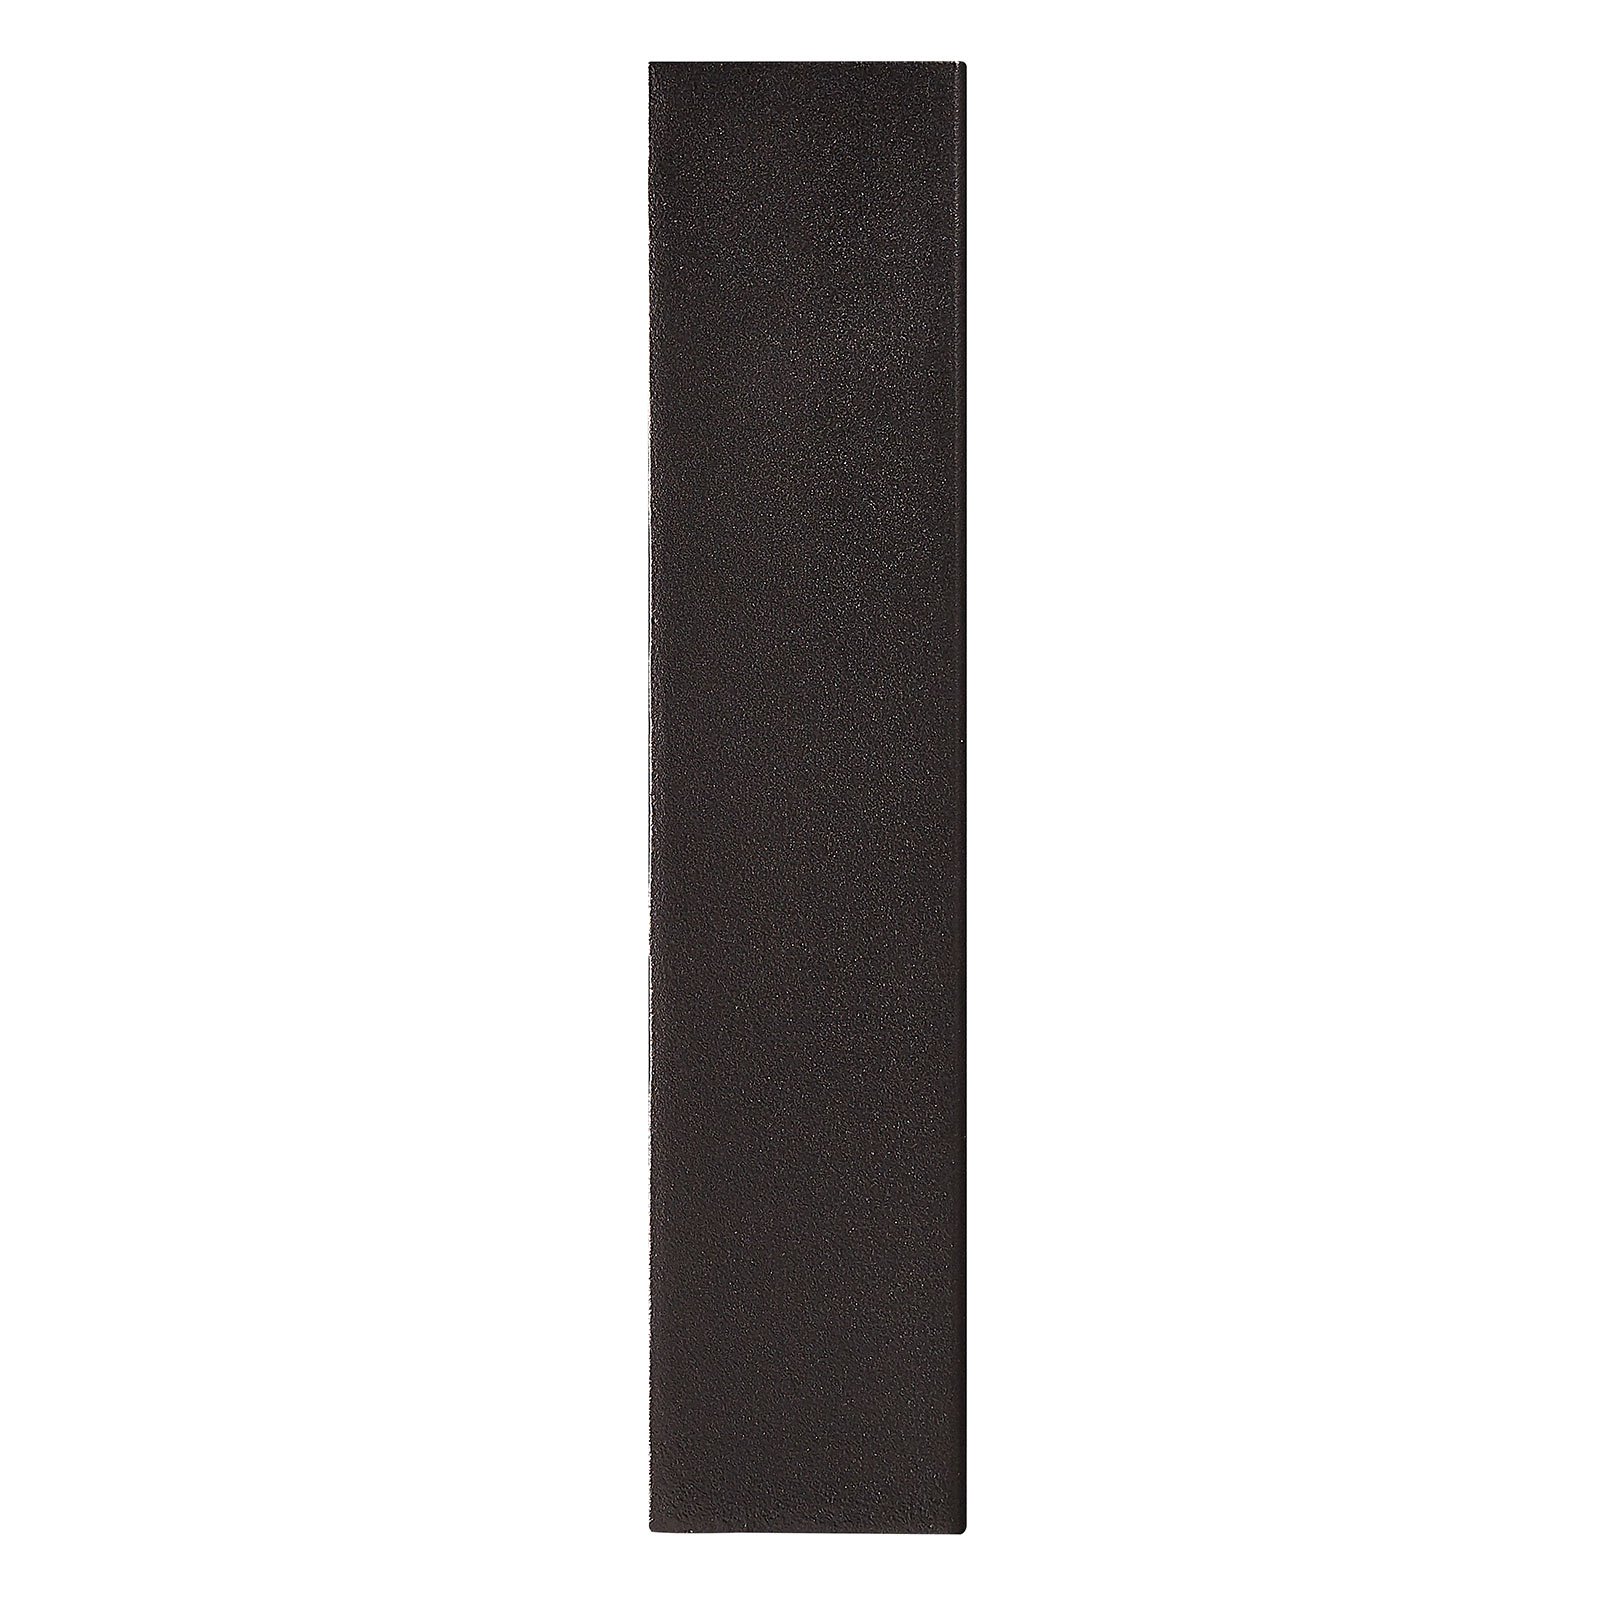 LED-Außenwandleuchte Fold, 15 x 21cm, schwarz